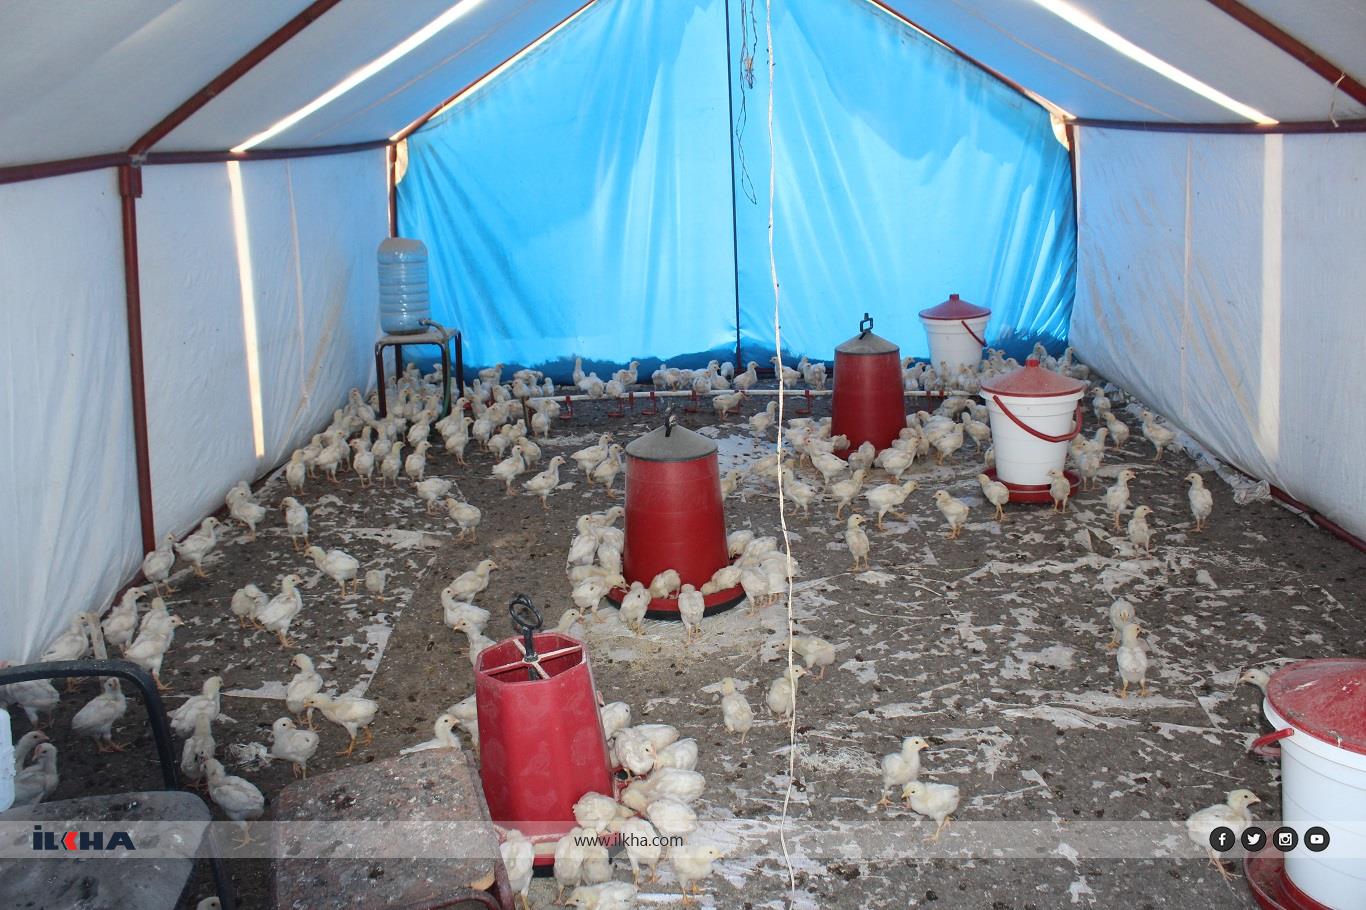 Elazığ'da sokak köpekleri, tavuk çiftliğindeki bin 300 civcivi telef etti